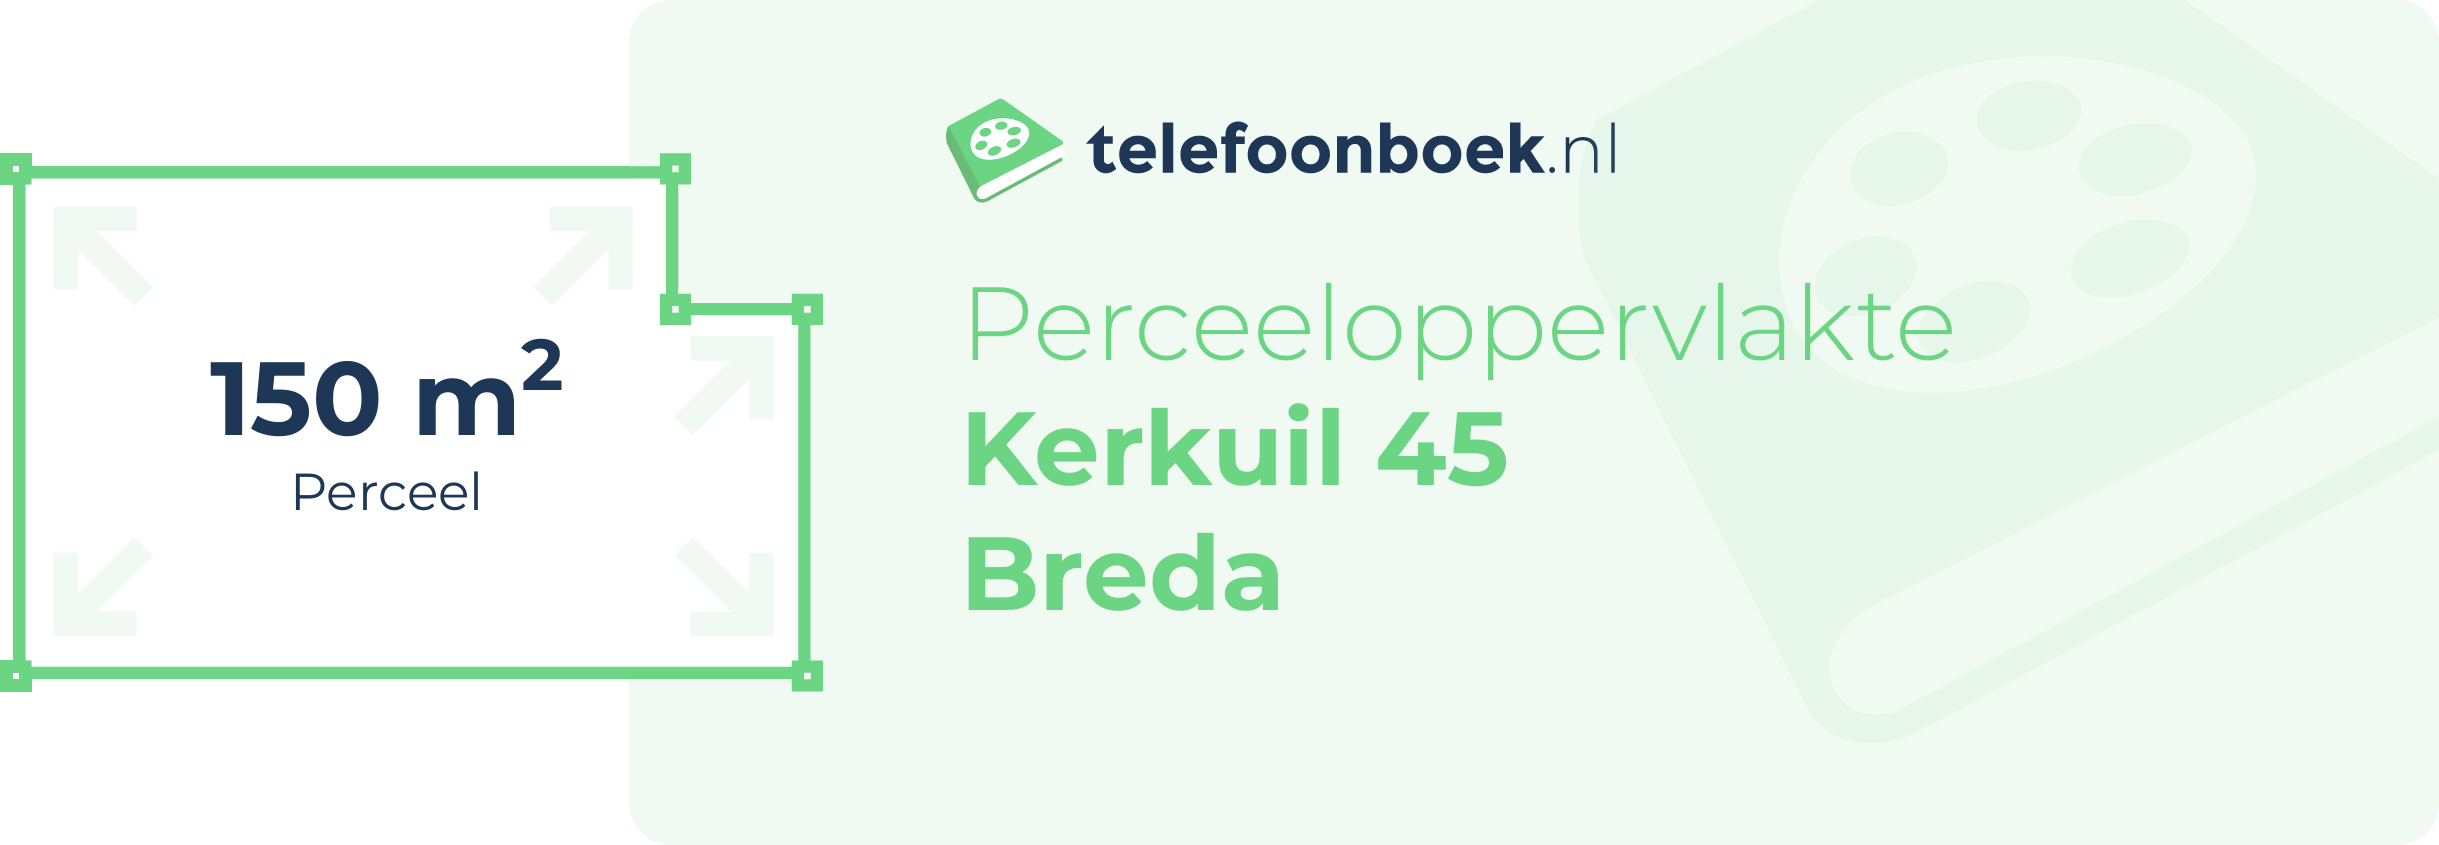 Perceeloppervlakte Kerkuil 45 Breda